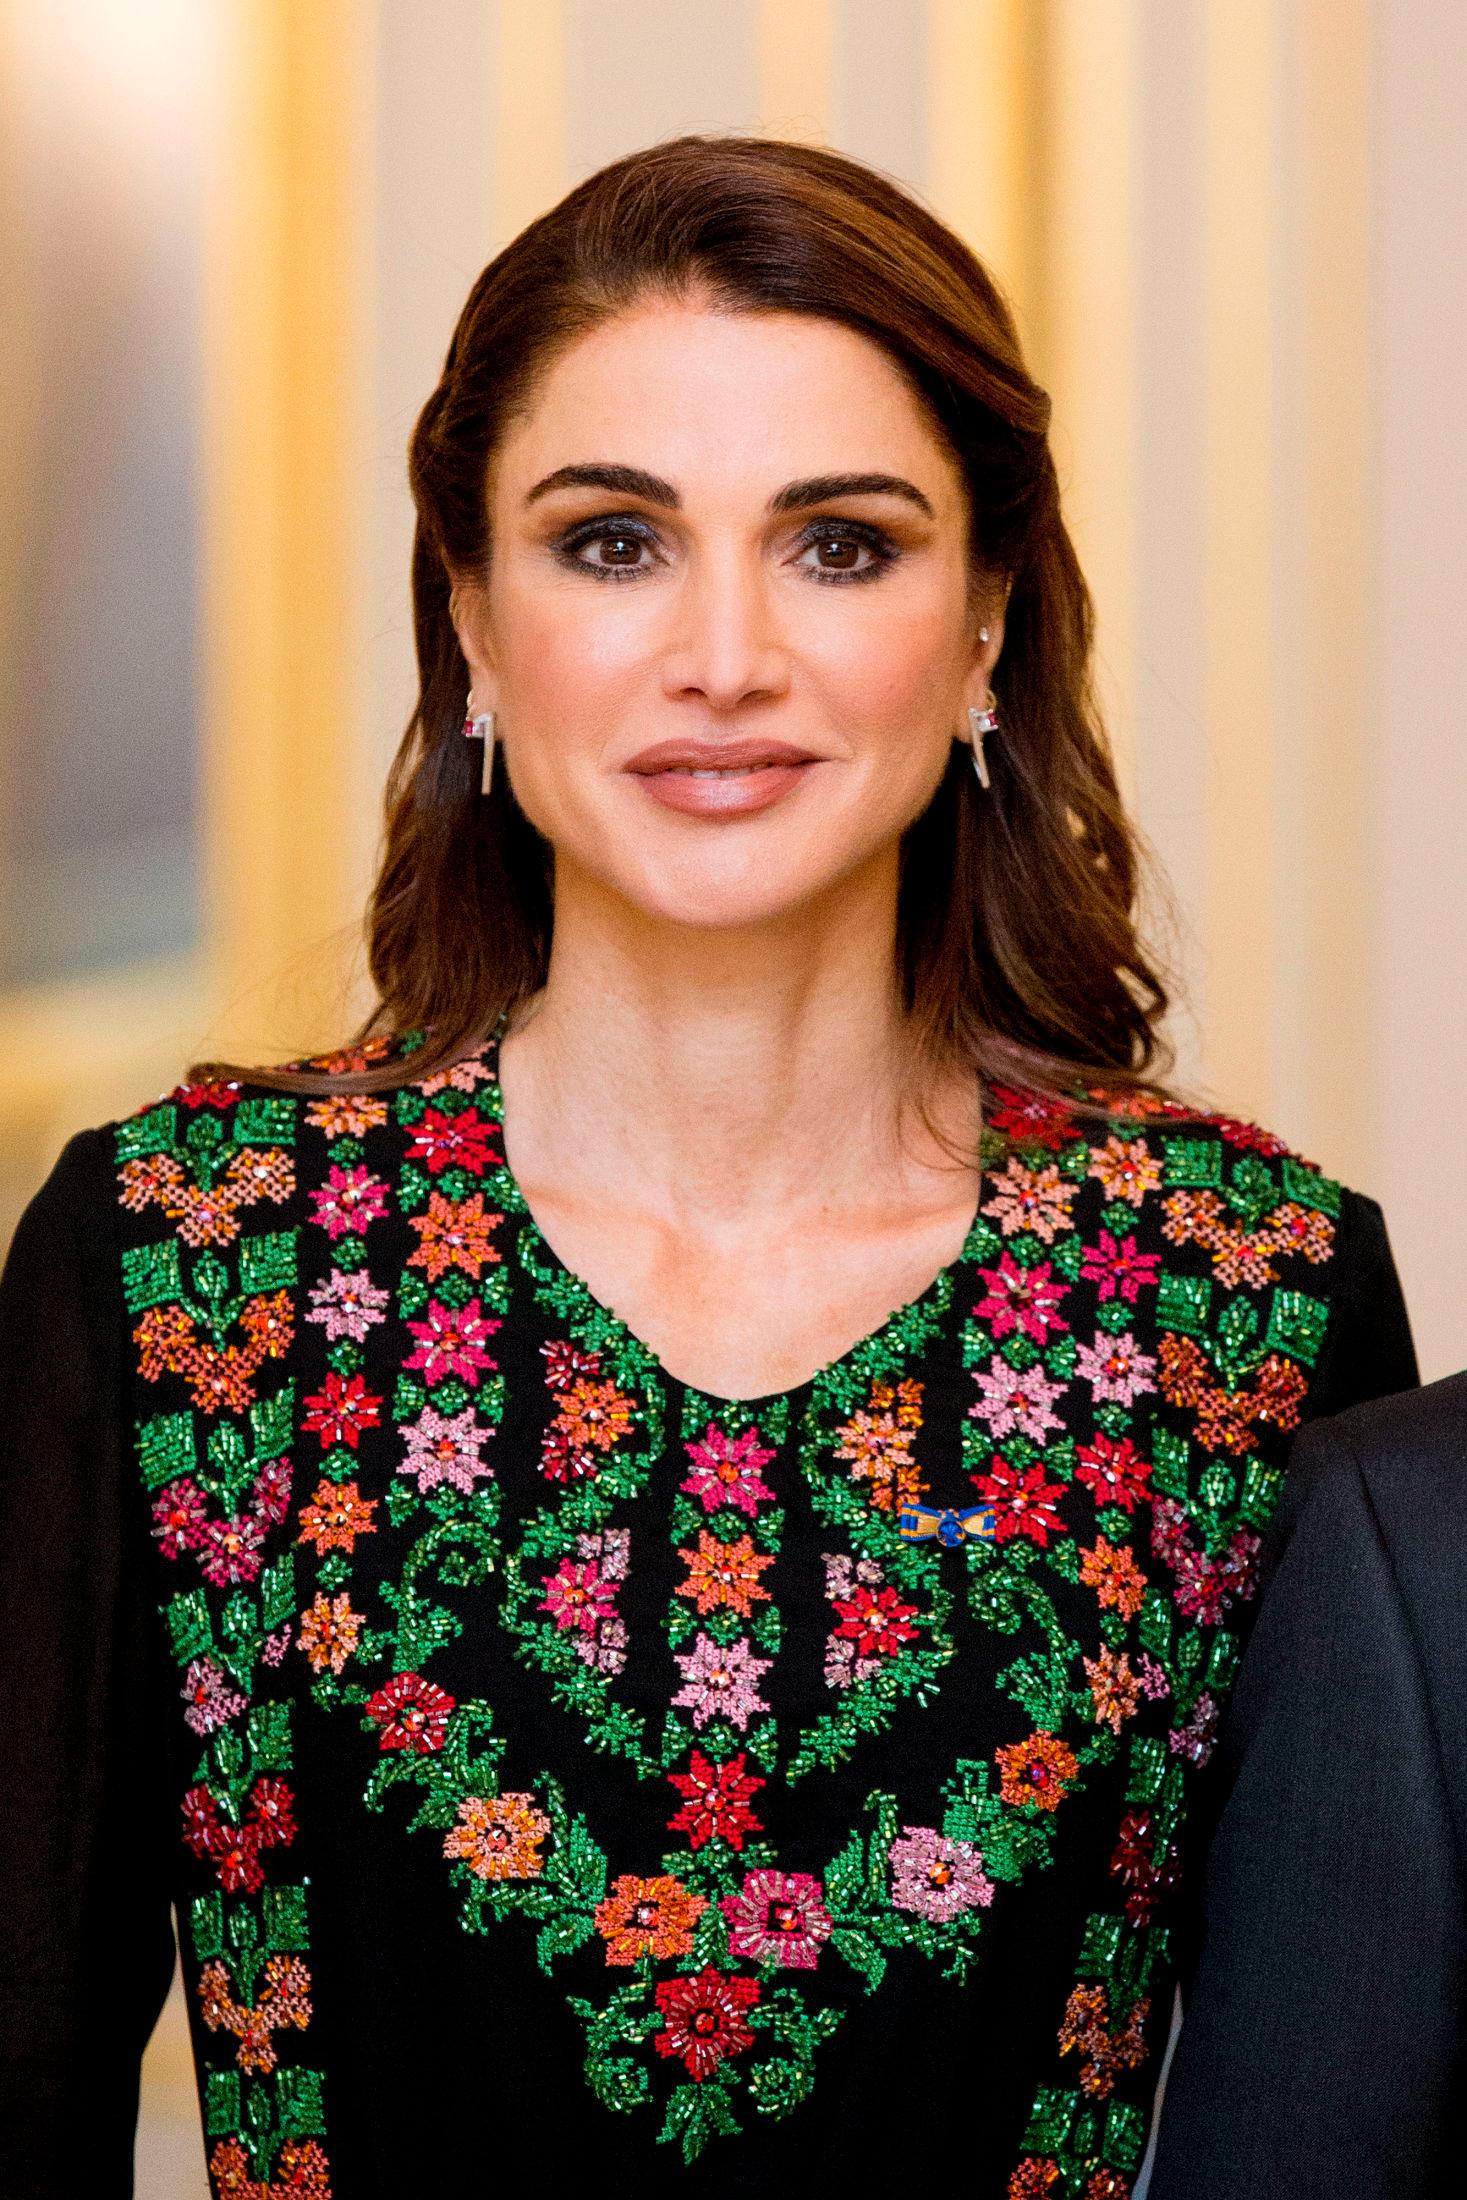 DETALJRIKT: Dronning Rania velger ofte iøynefallende detaljer på antrekkene sine. Da det kommer til styling har hun ofte sotede øyne og lett krøllet hår. Foto: Getty Images.